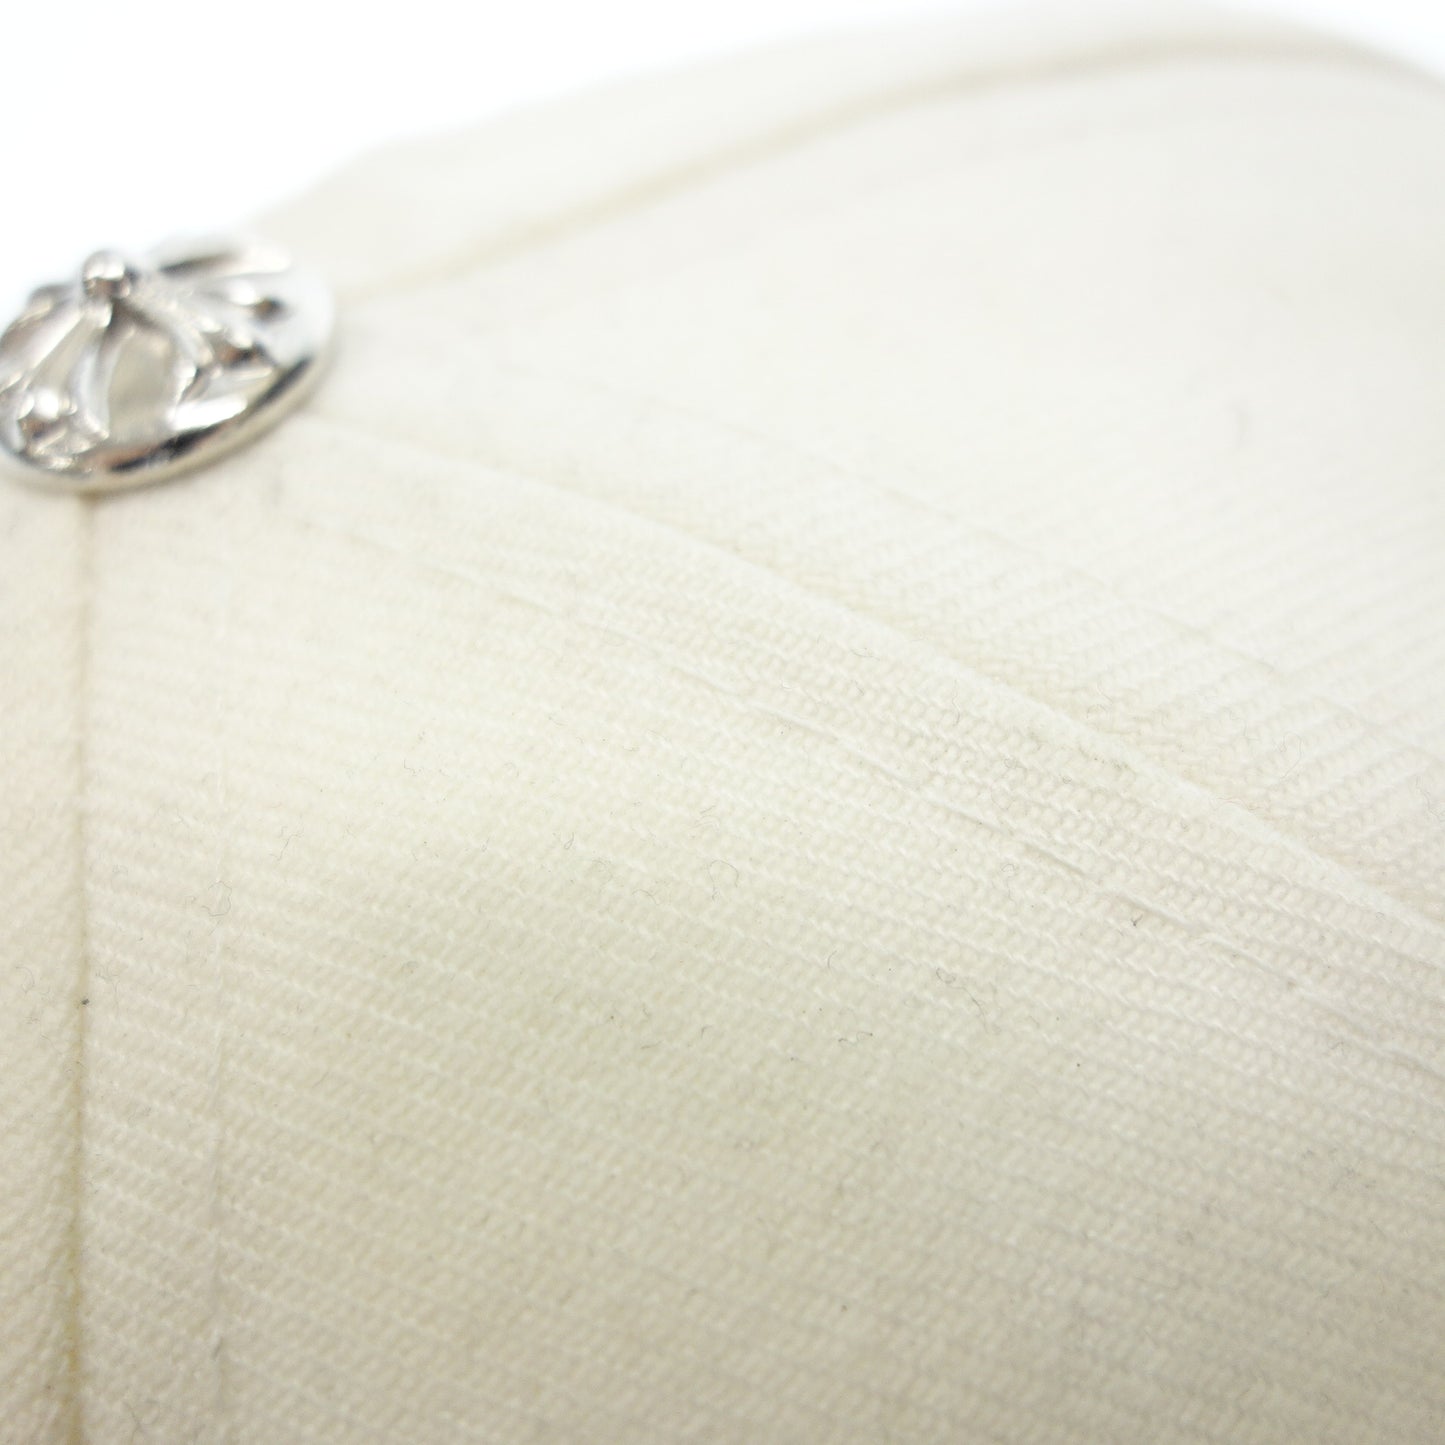 二手 CHROME HEARTS 棒球帽 刺绣徽标 尺寸 59.6cm 白色 2238-304-2715 CHROME HEARTS [AFI20] 